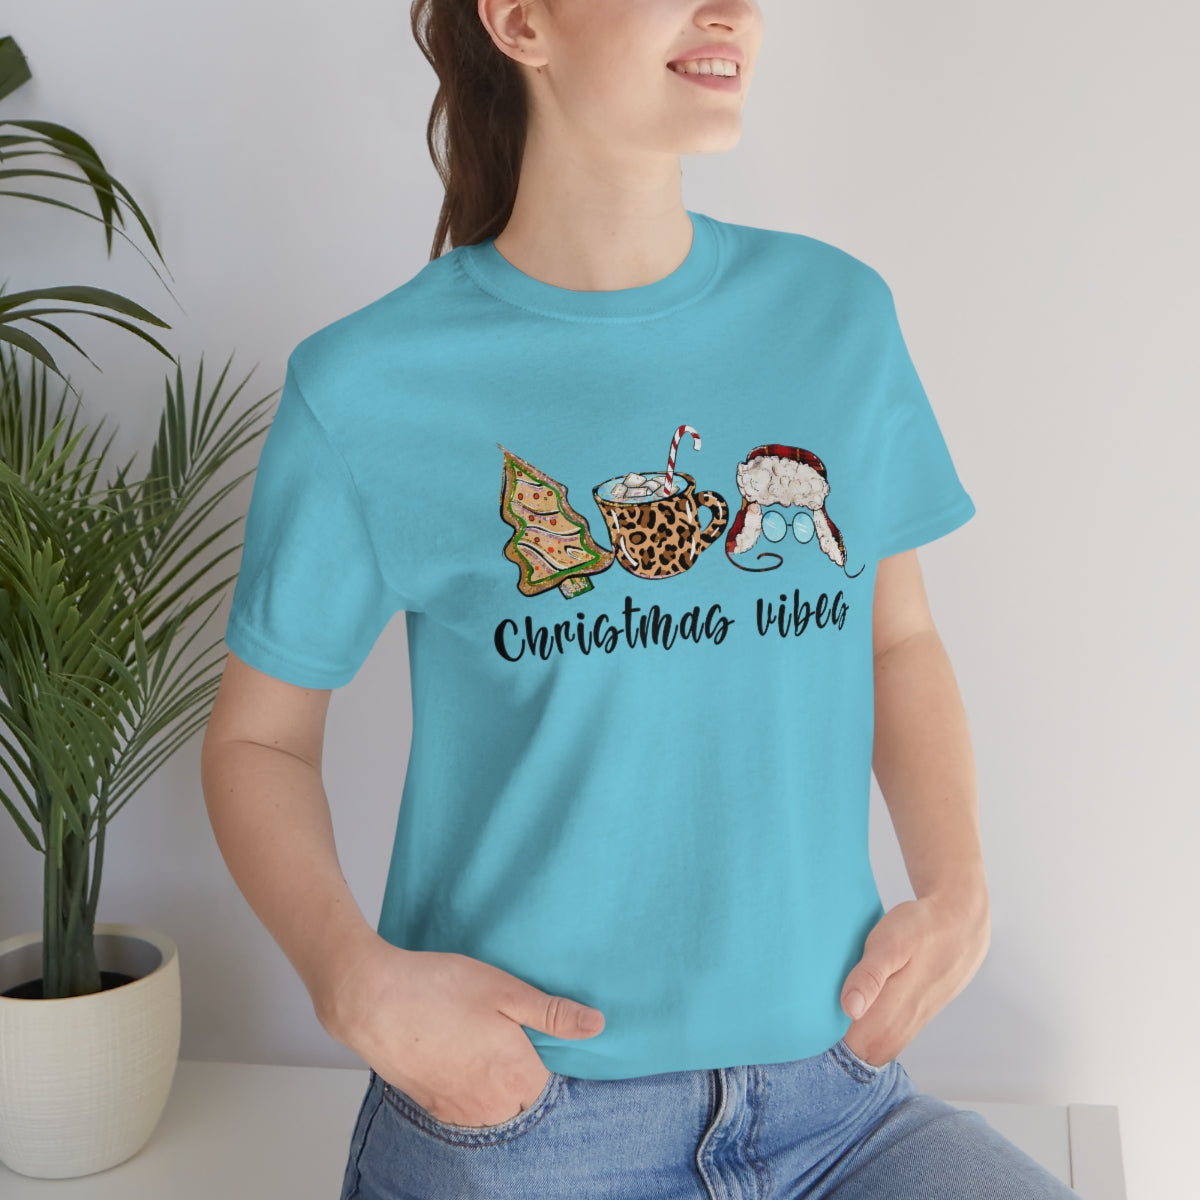 Christmas Vibes Shirt For Adults